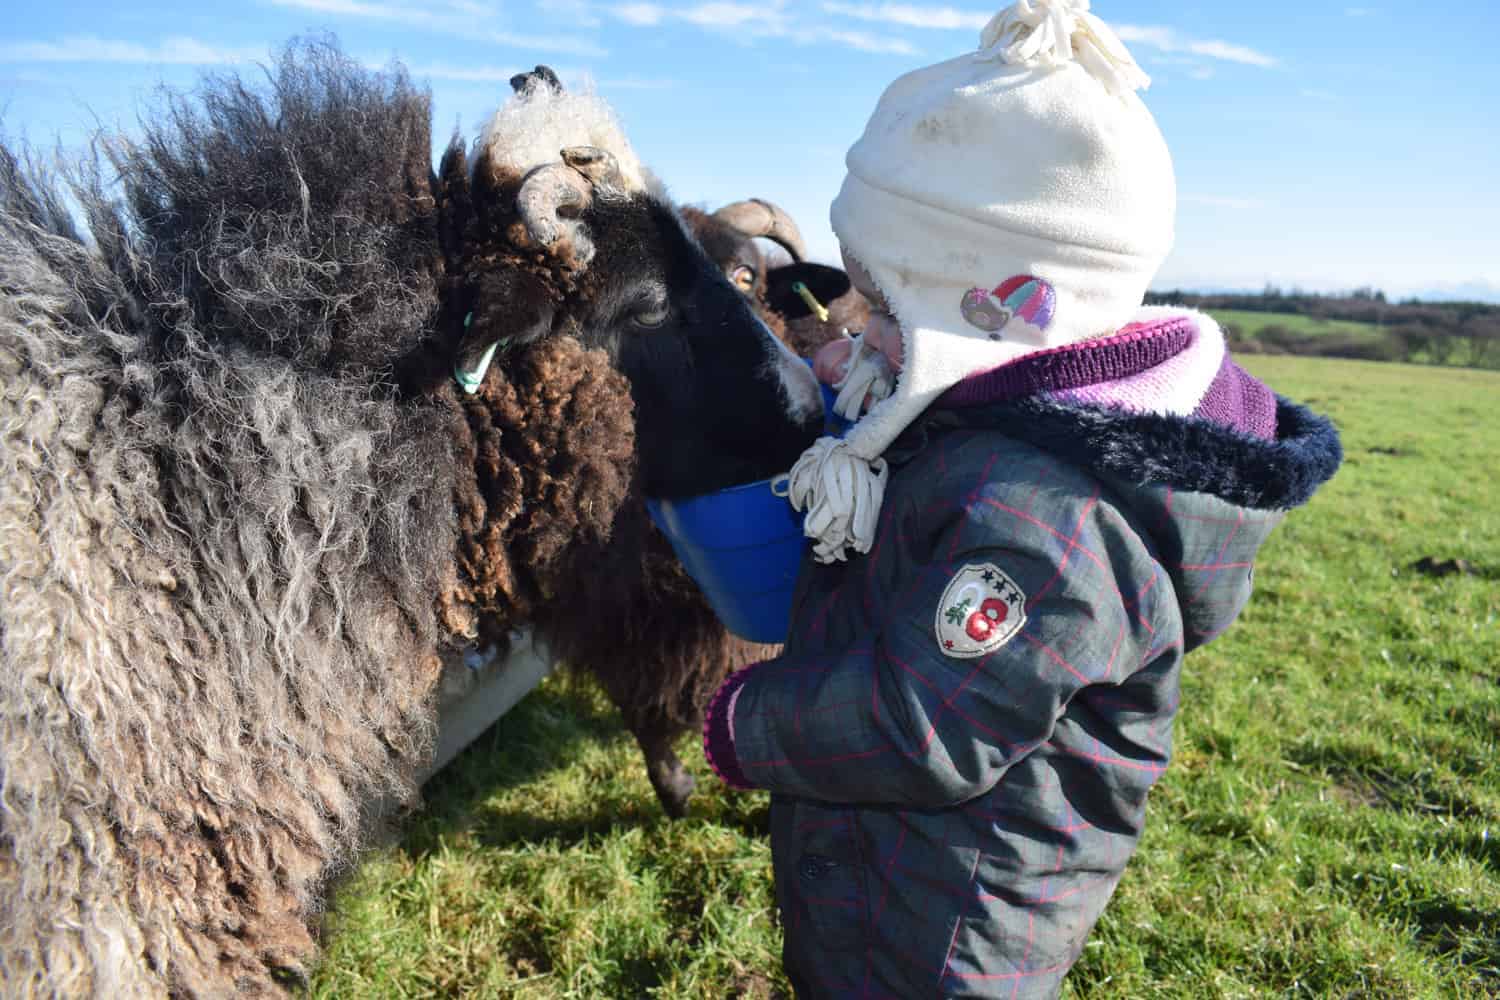 Holly pet lamb sheep jacob cross shetland spotted black grey white wales gwynedd kids farm life 3